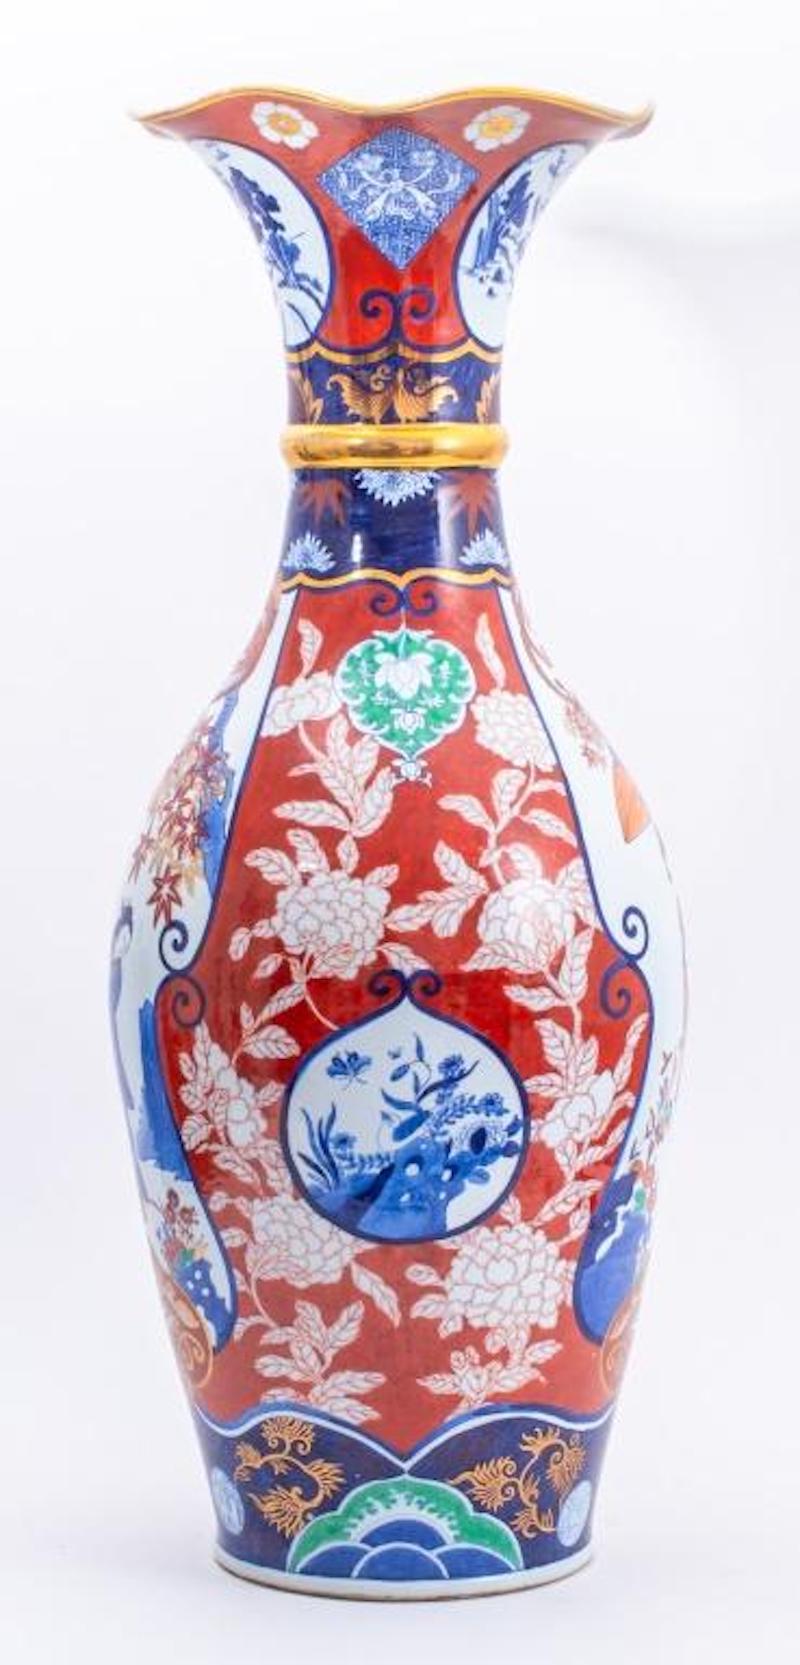 Sehr große handbemalte und verzierte / vergoldete japanische Bodenvasen aus Imari-Porzellan. Die Vase zeigt außen und innen eine handgemalte japanische Szene aus der Meiji-Zeit und hat einen trompetenförmigen Hals. Jede handgemalte Szene ist mit